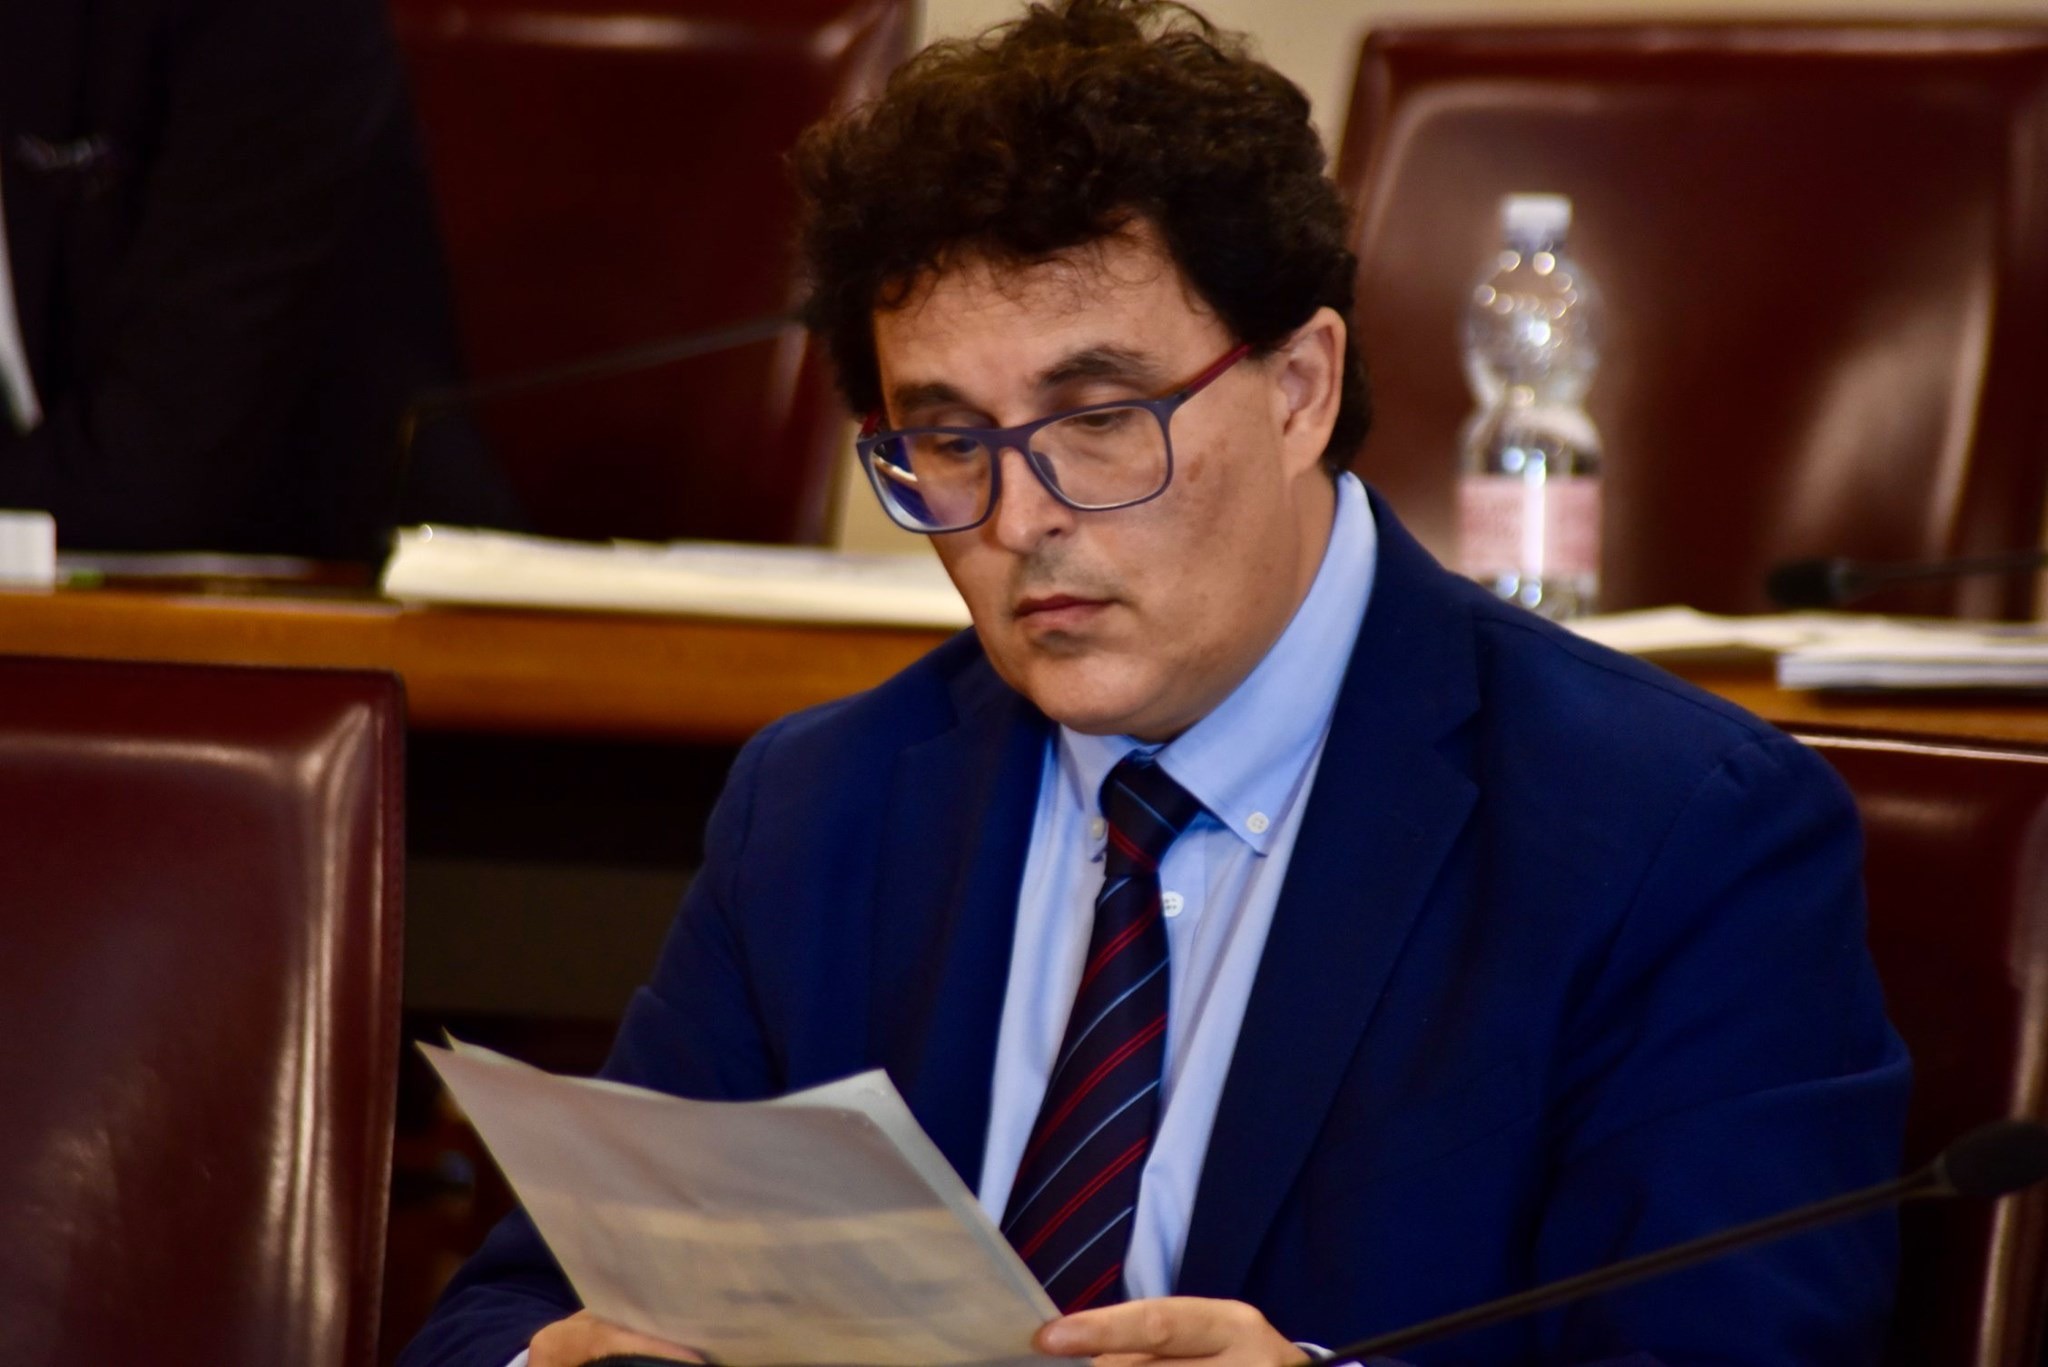 Regione Abruzzo, approvata all’unanimità  la risoluzione per la dematerializzazione delle prescrizioni mediche